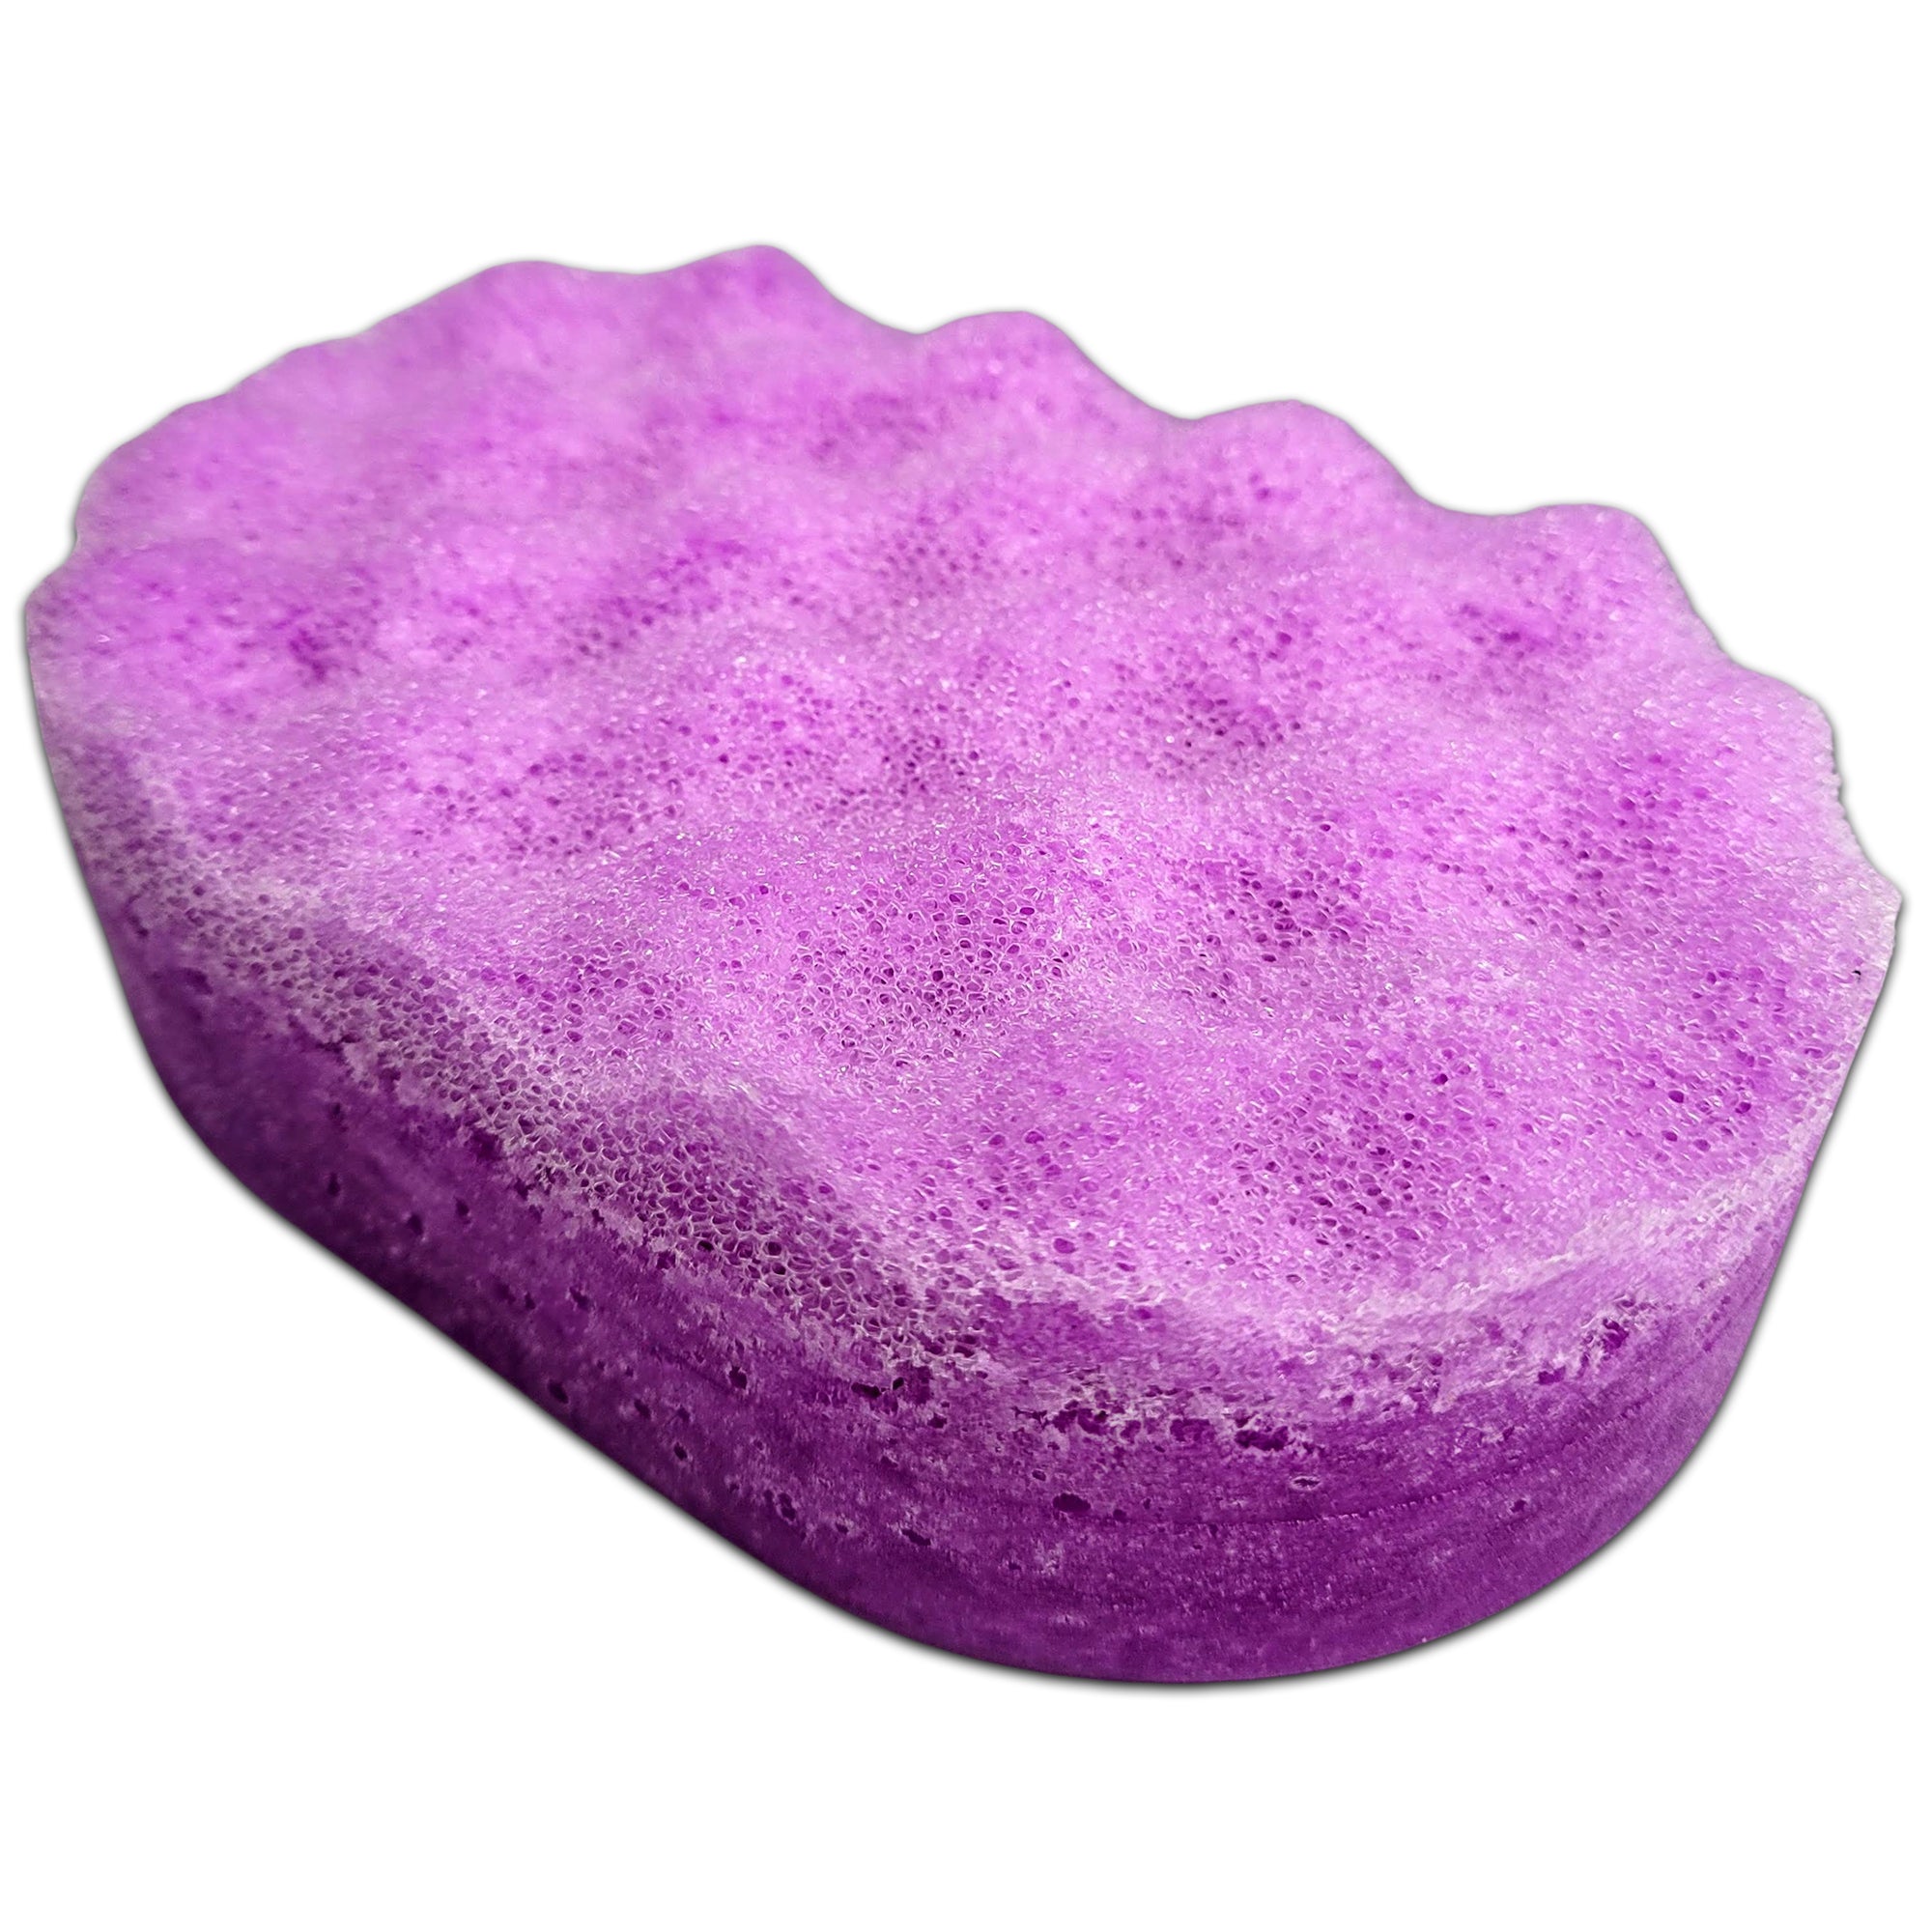 Aliens Soap Sponges